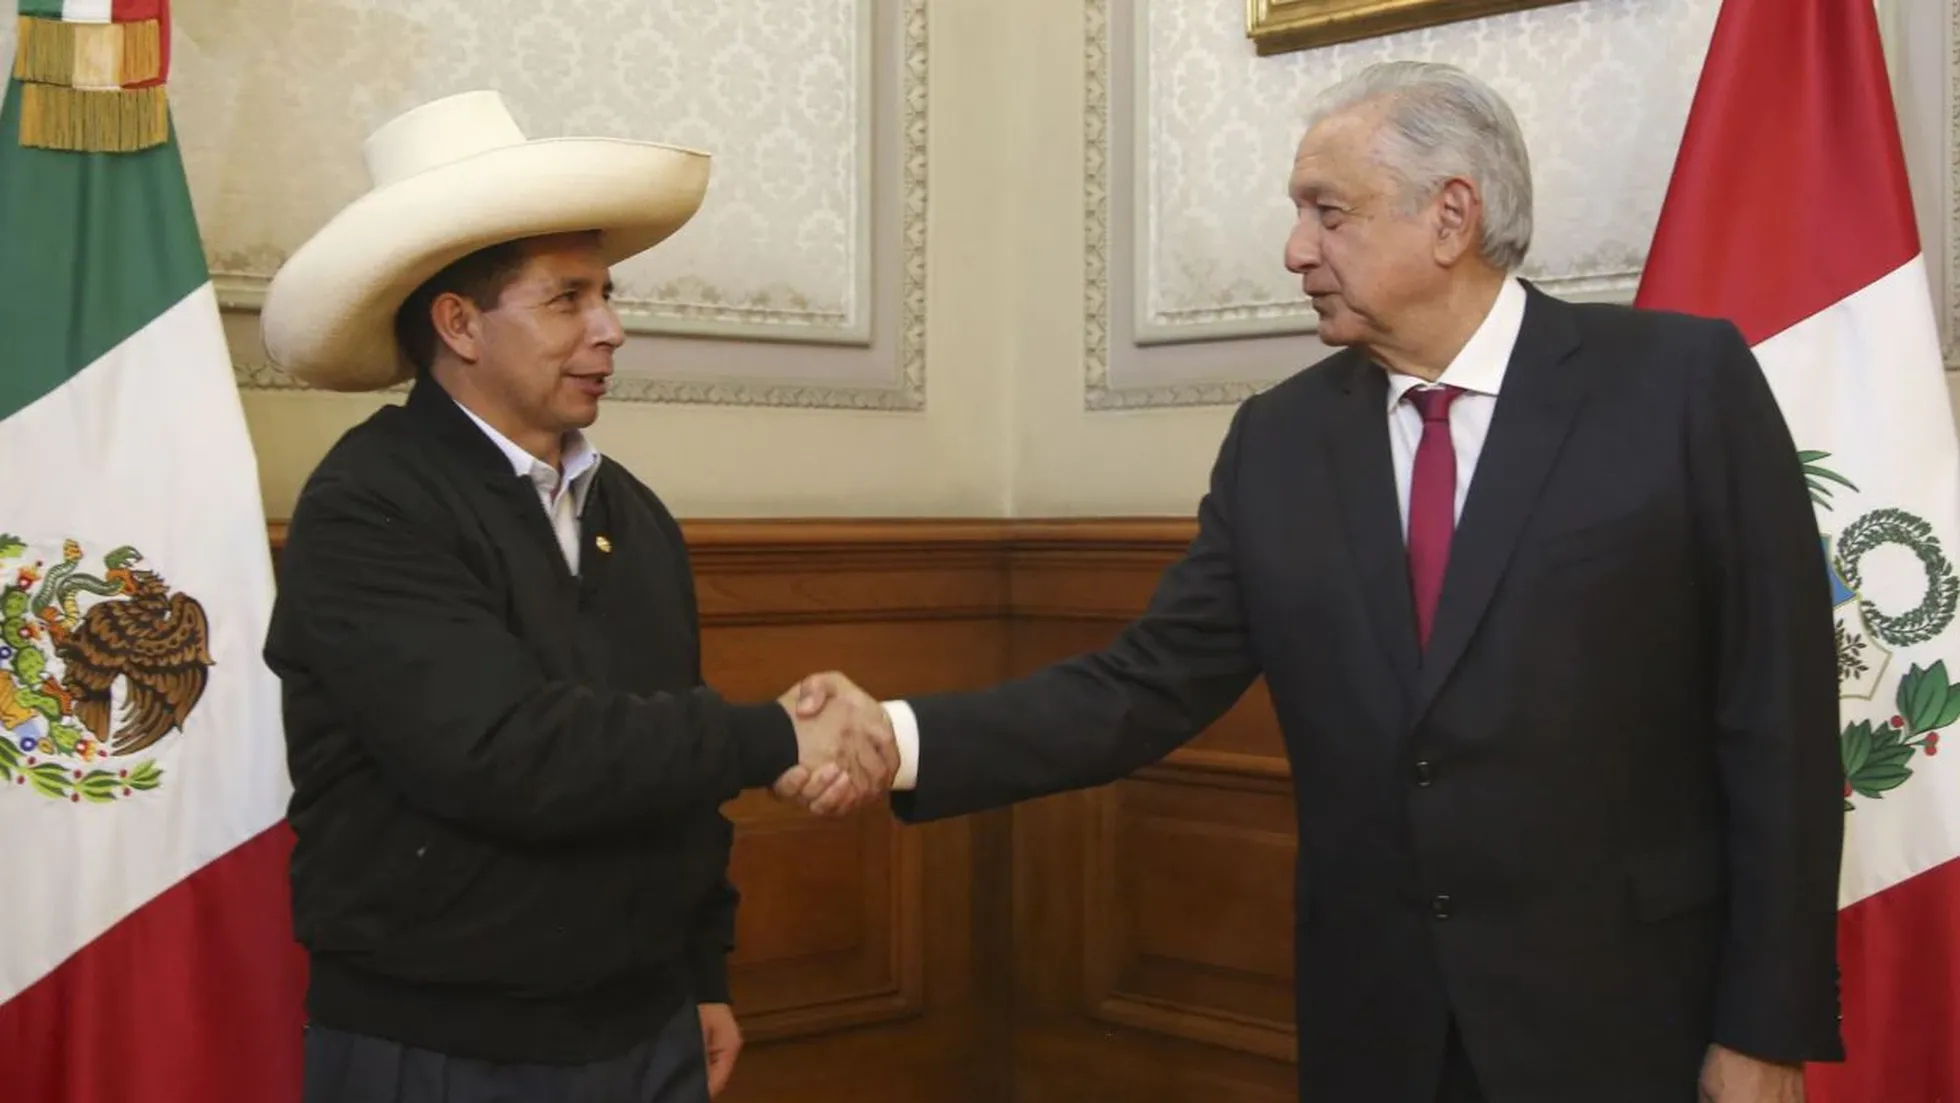 Pedro Castillo apoya cumbre de Alianza del Pacífico en Perú, como sugirió AMLO